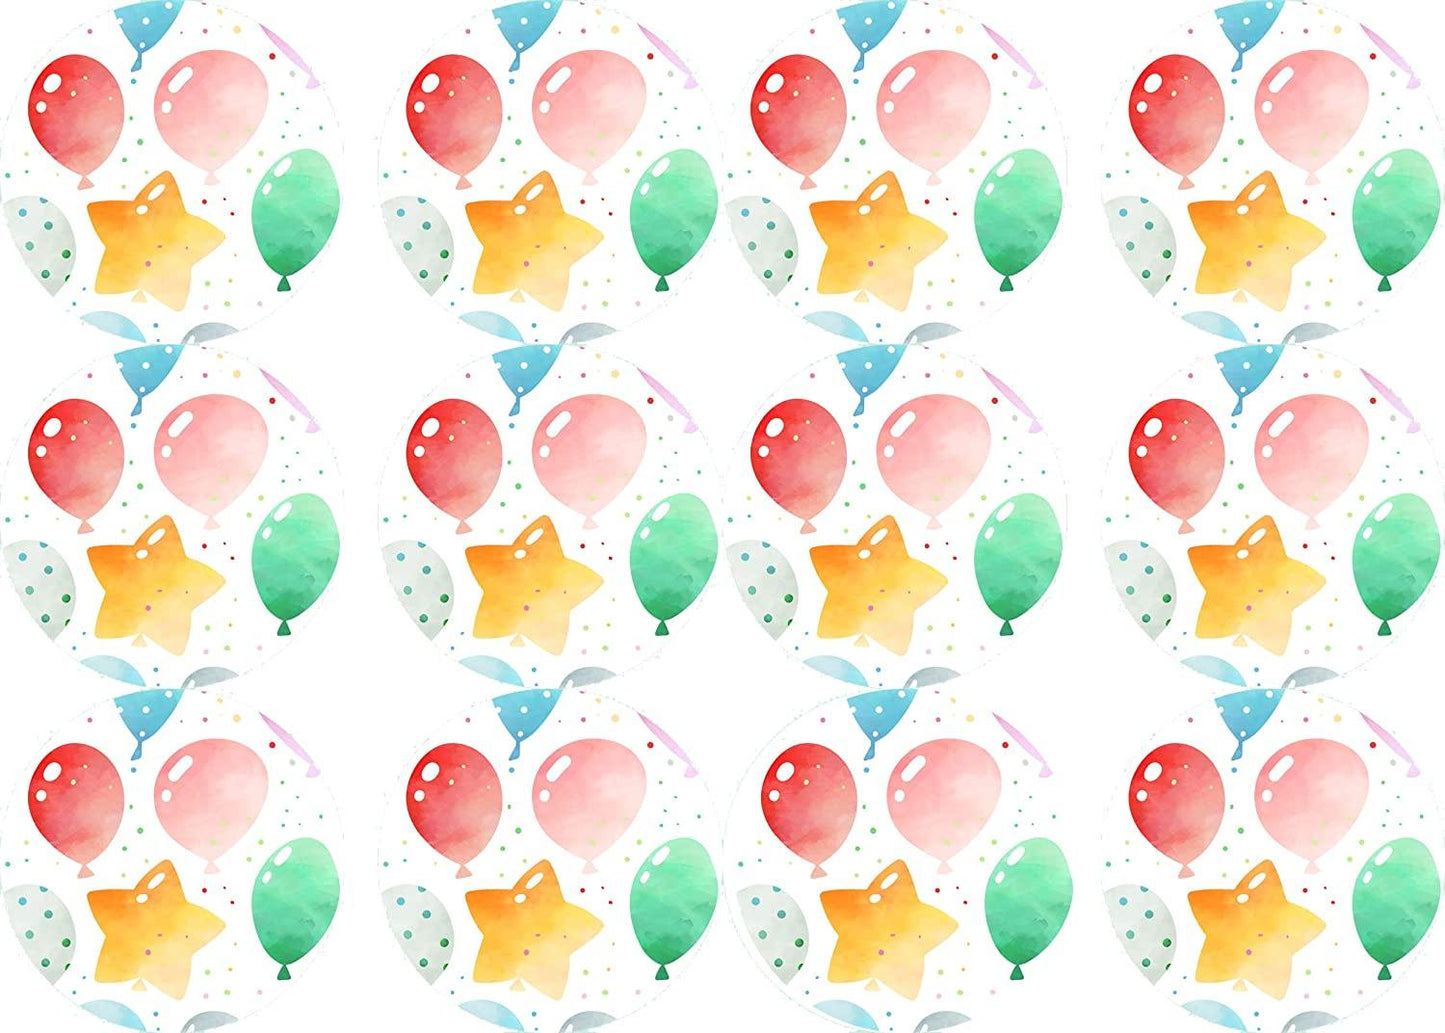 Muffinaufleger Ballons - 12 Stück ausgestanzt - Tolle-Tortenaufleger